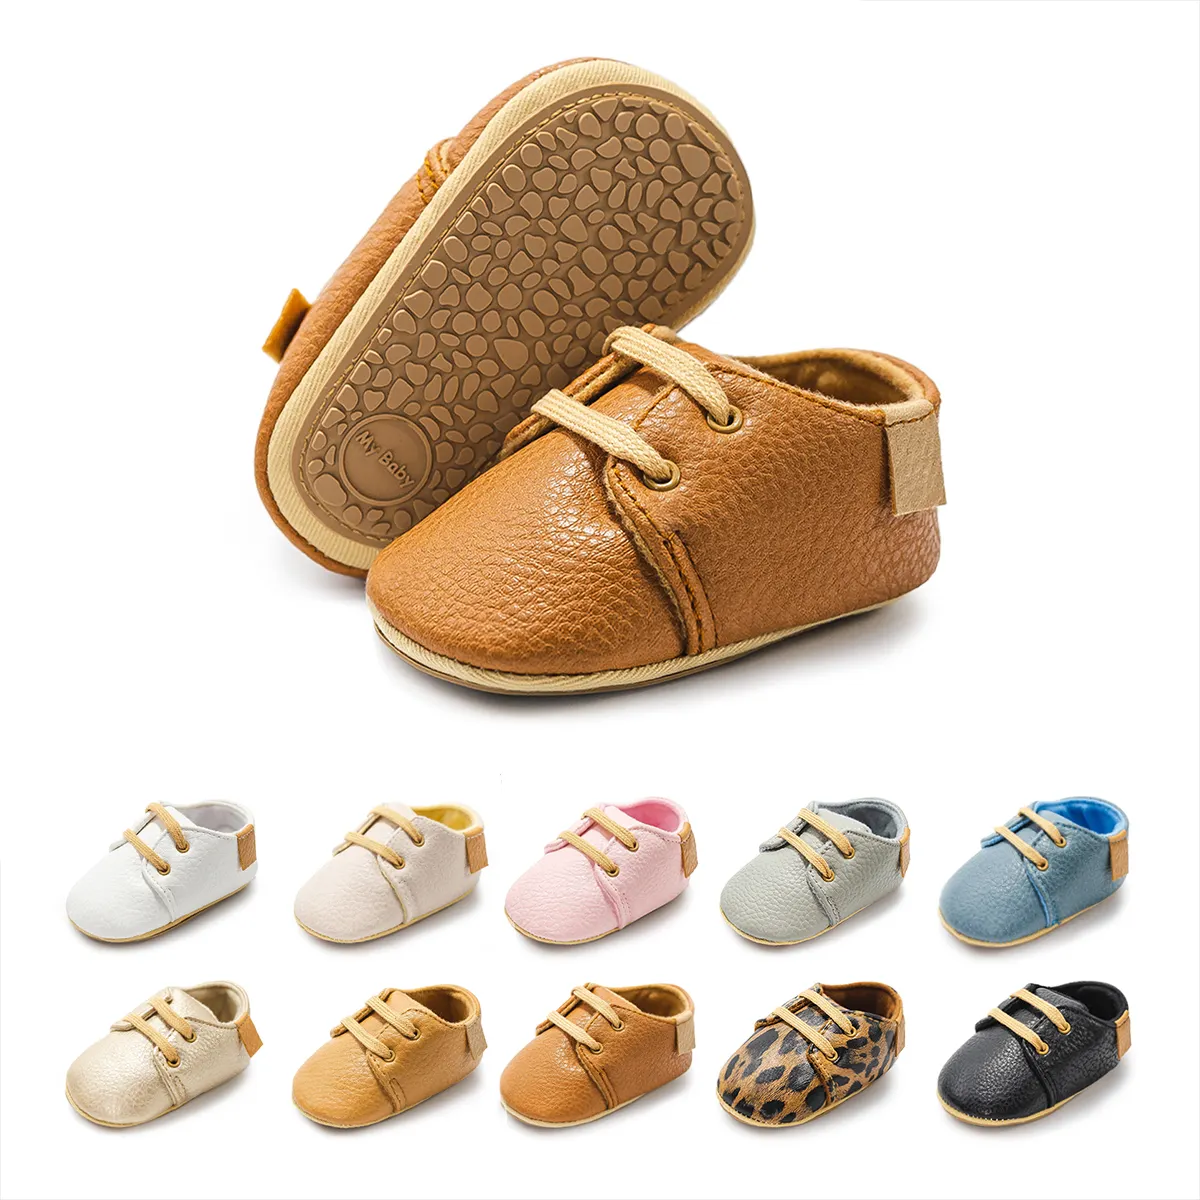 أحذية للأطفال حديثي الولادة عالية الجودة أحذية من المطاط مانعة للانزلاق للأماكن في الهواء الطلق للحفلات للأطفال من 0-18 شهرًا